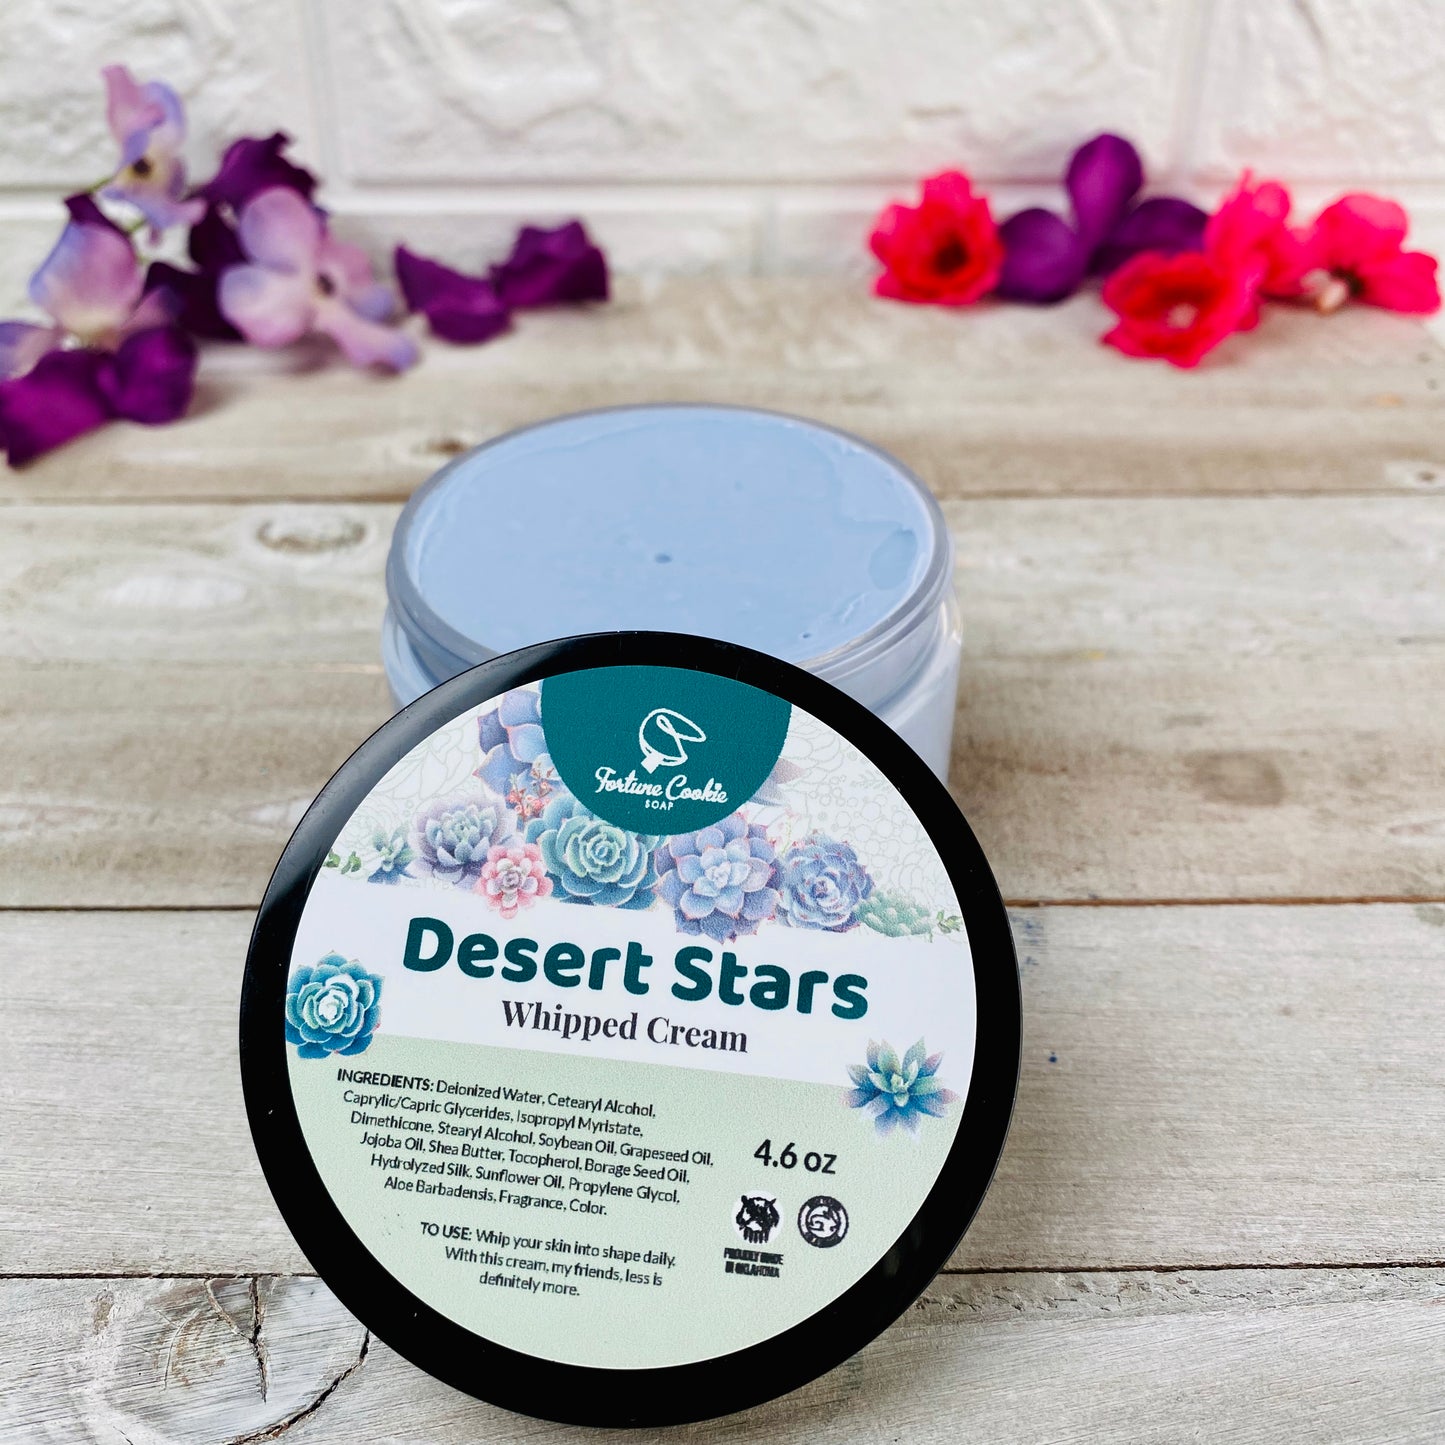 DESERT STARS Whipped Cream